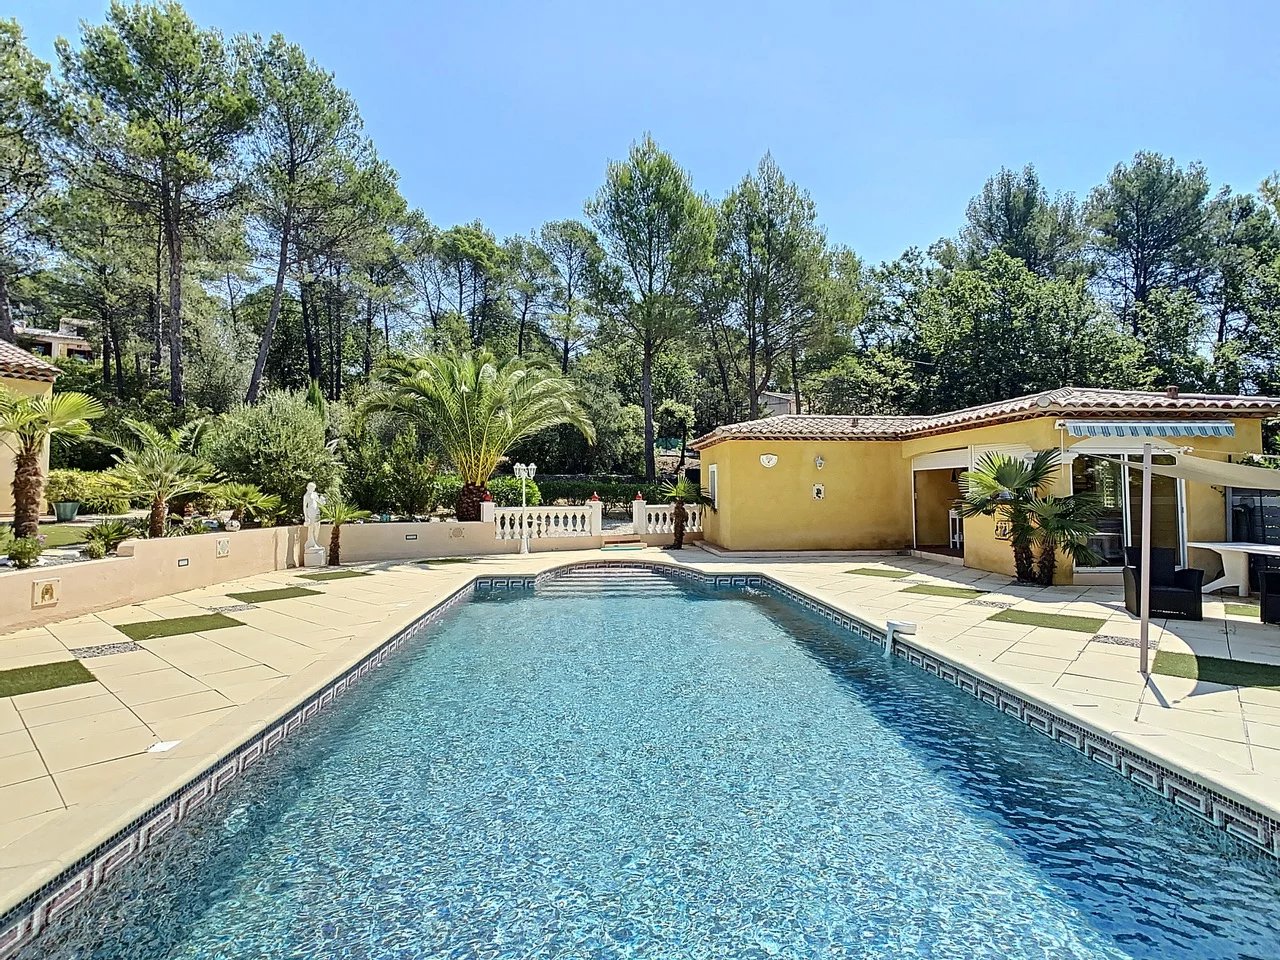 Gelijkvloerse villa met zwembad en poolhouse, groot terrein